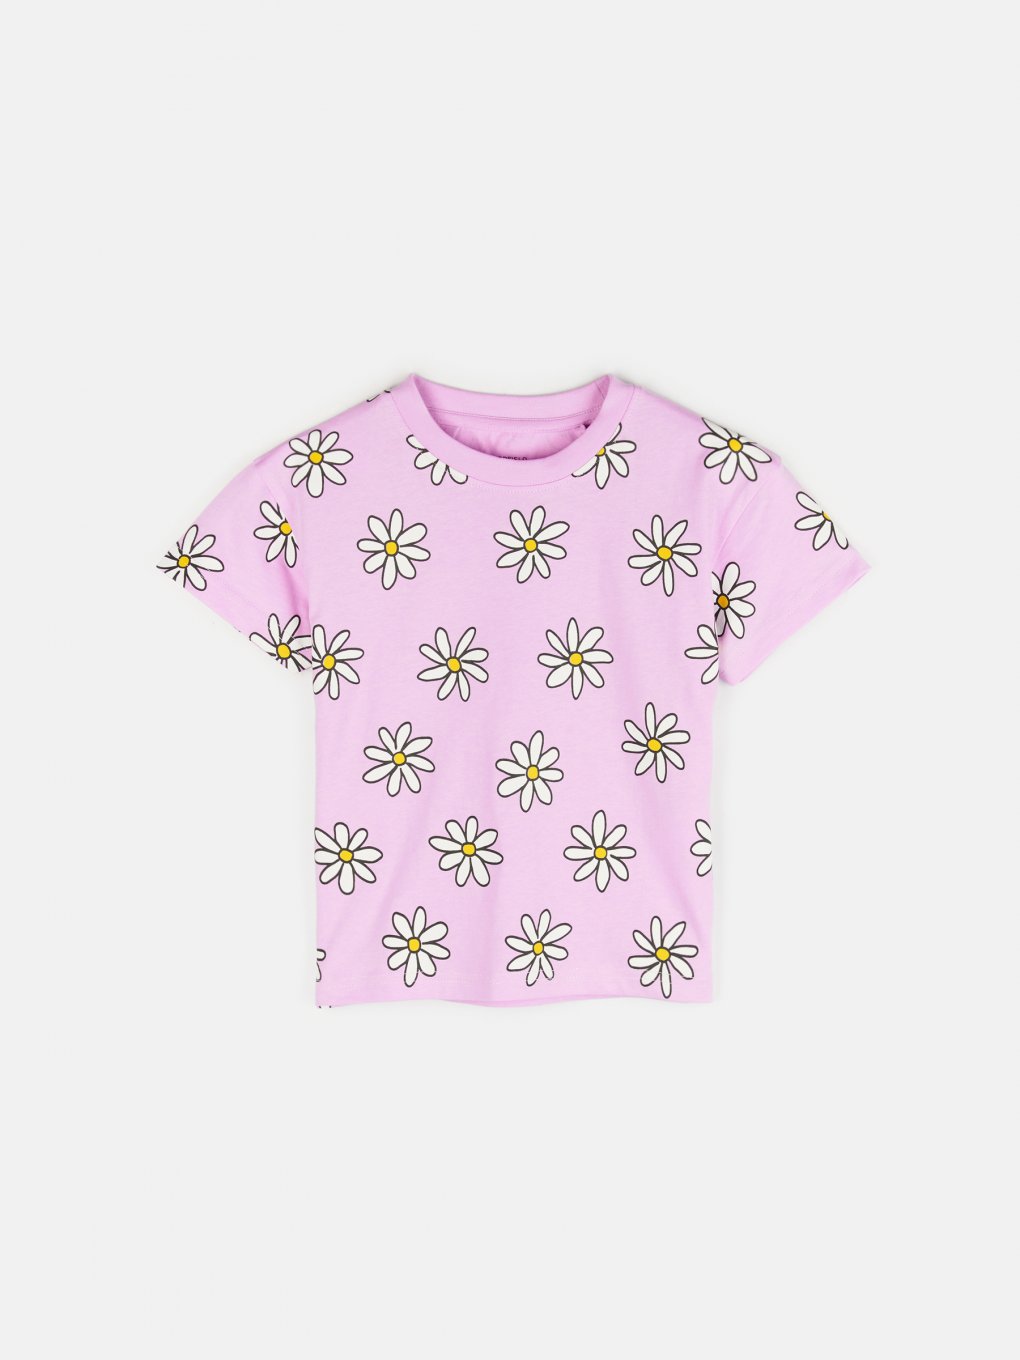 Flower print otton t-shirt